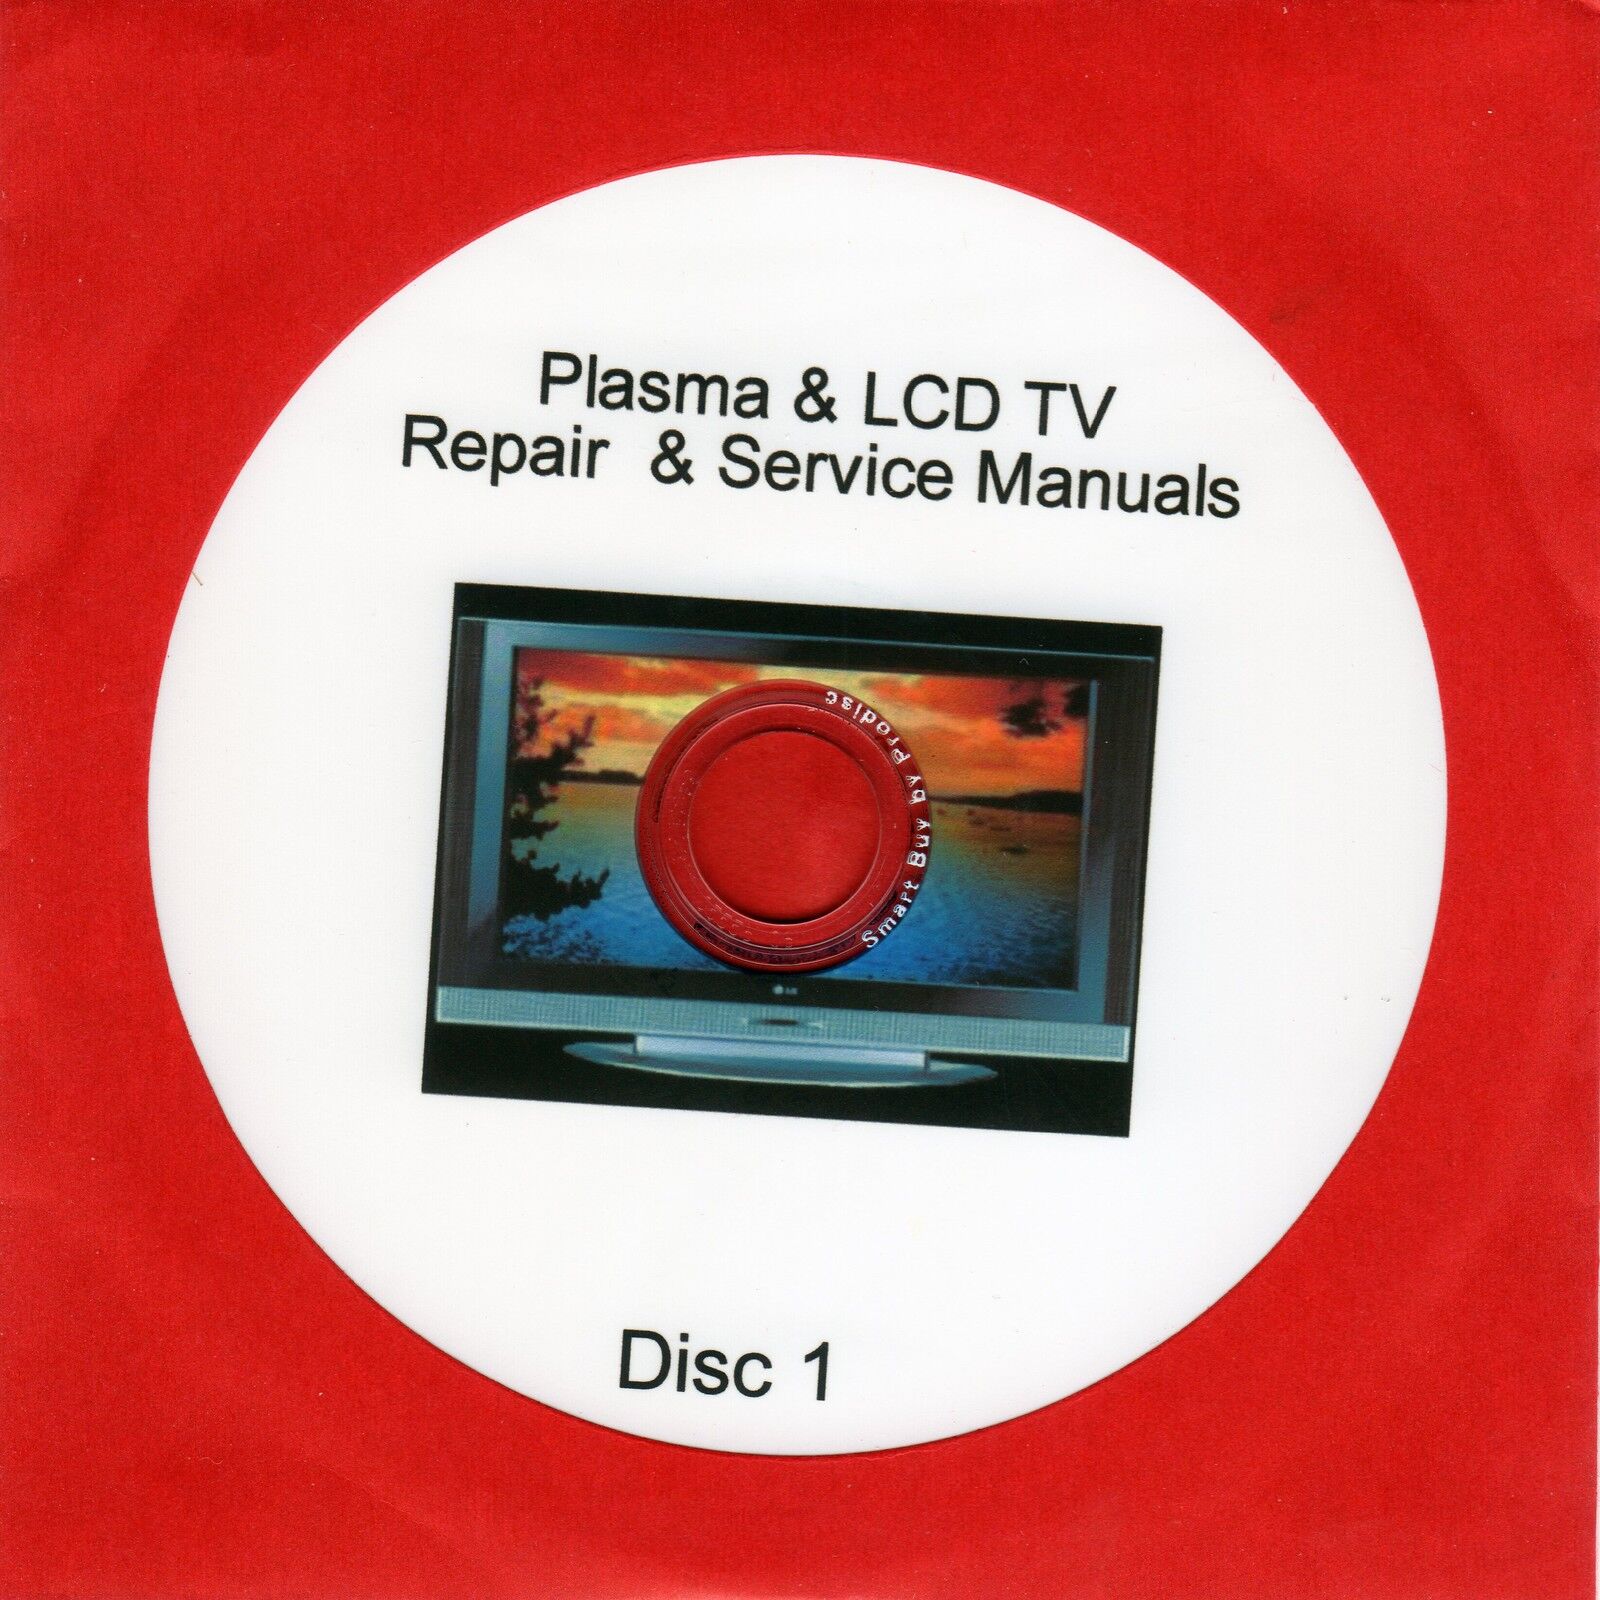 Repair Manuals for 900 LCD & Plasma TVs plus unusual self employment idea